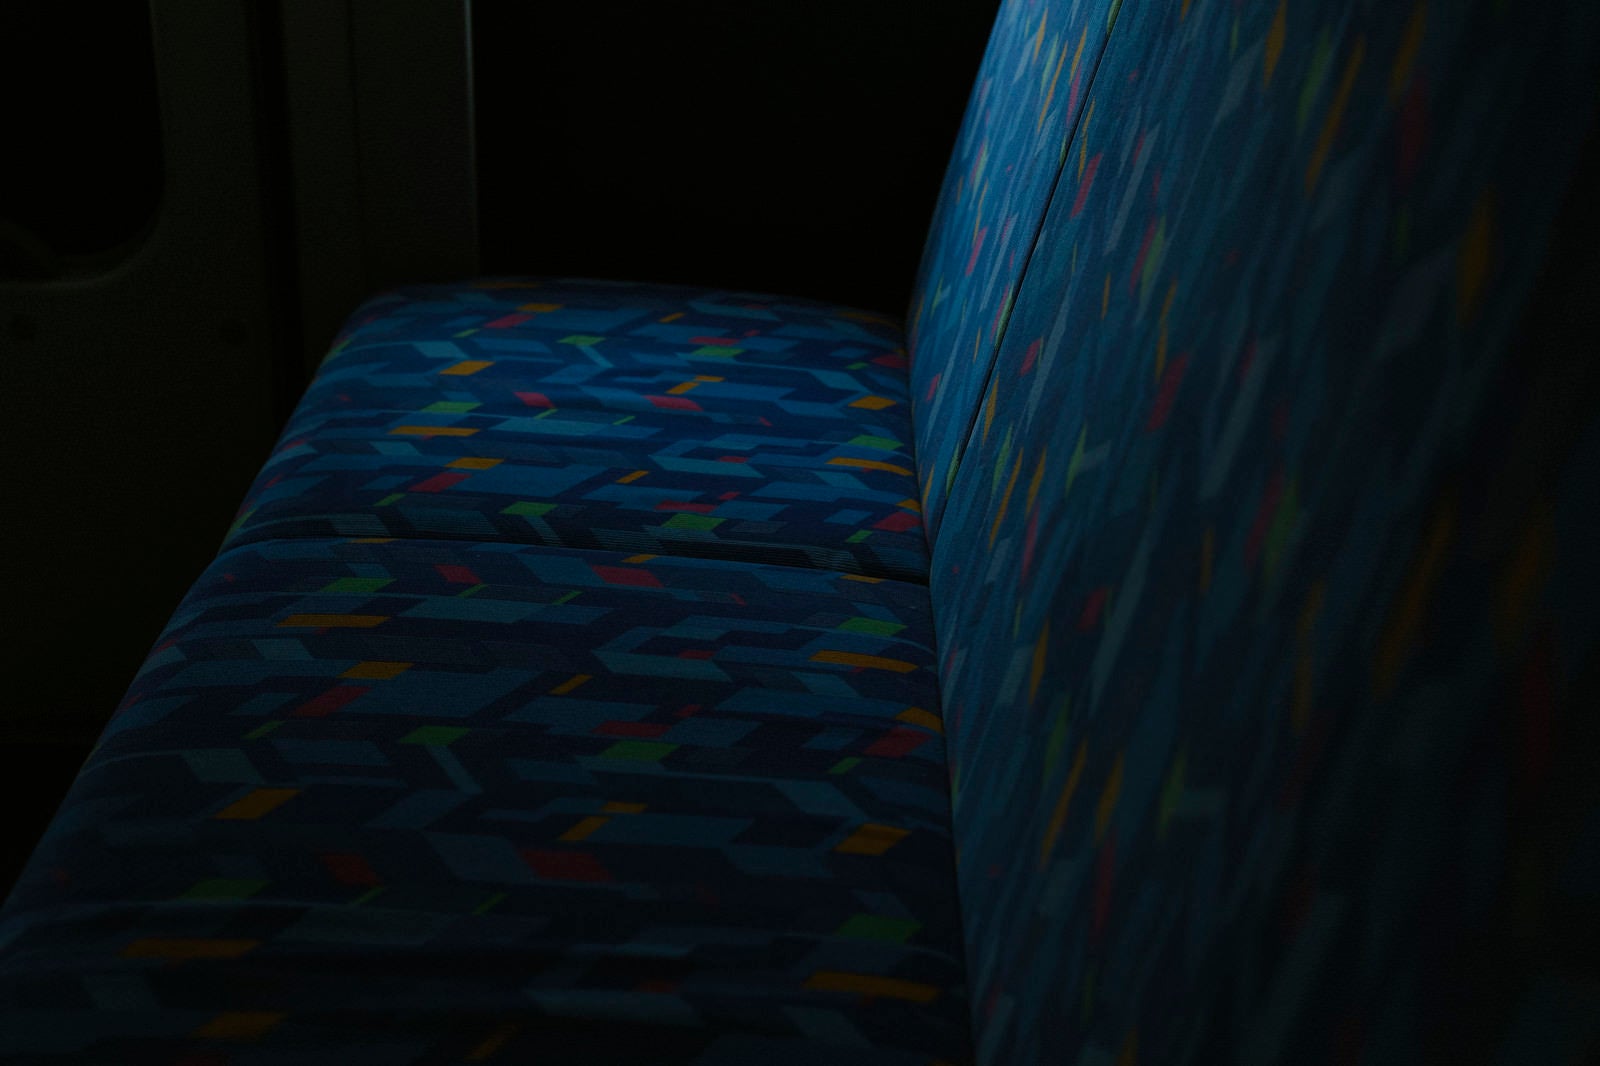 「薄暗い光に照らされるバスの座席」の写真